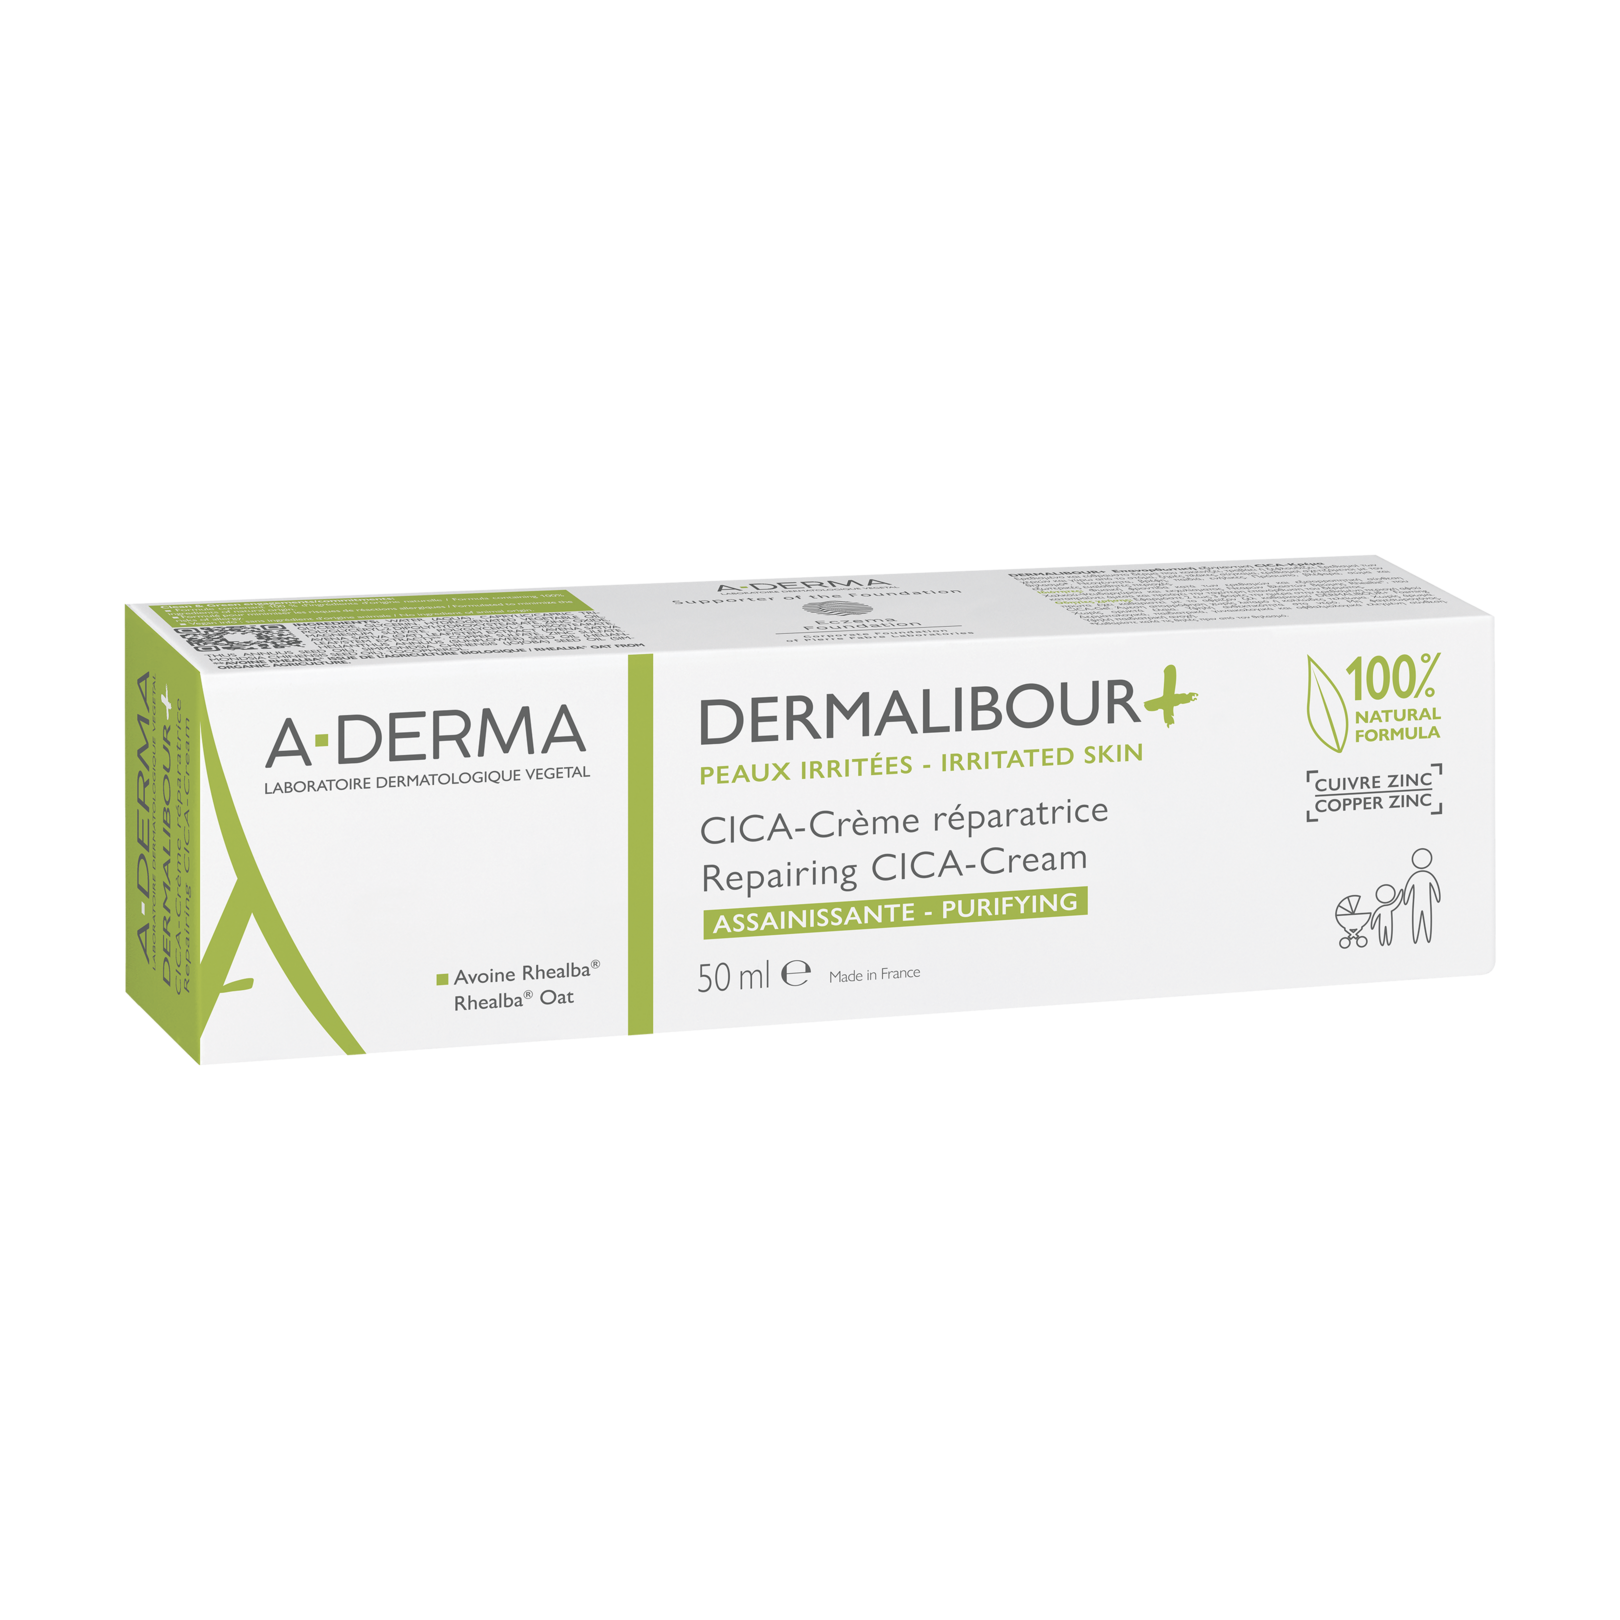 Dermalibour+ cream - A-DERMA